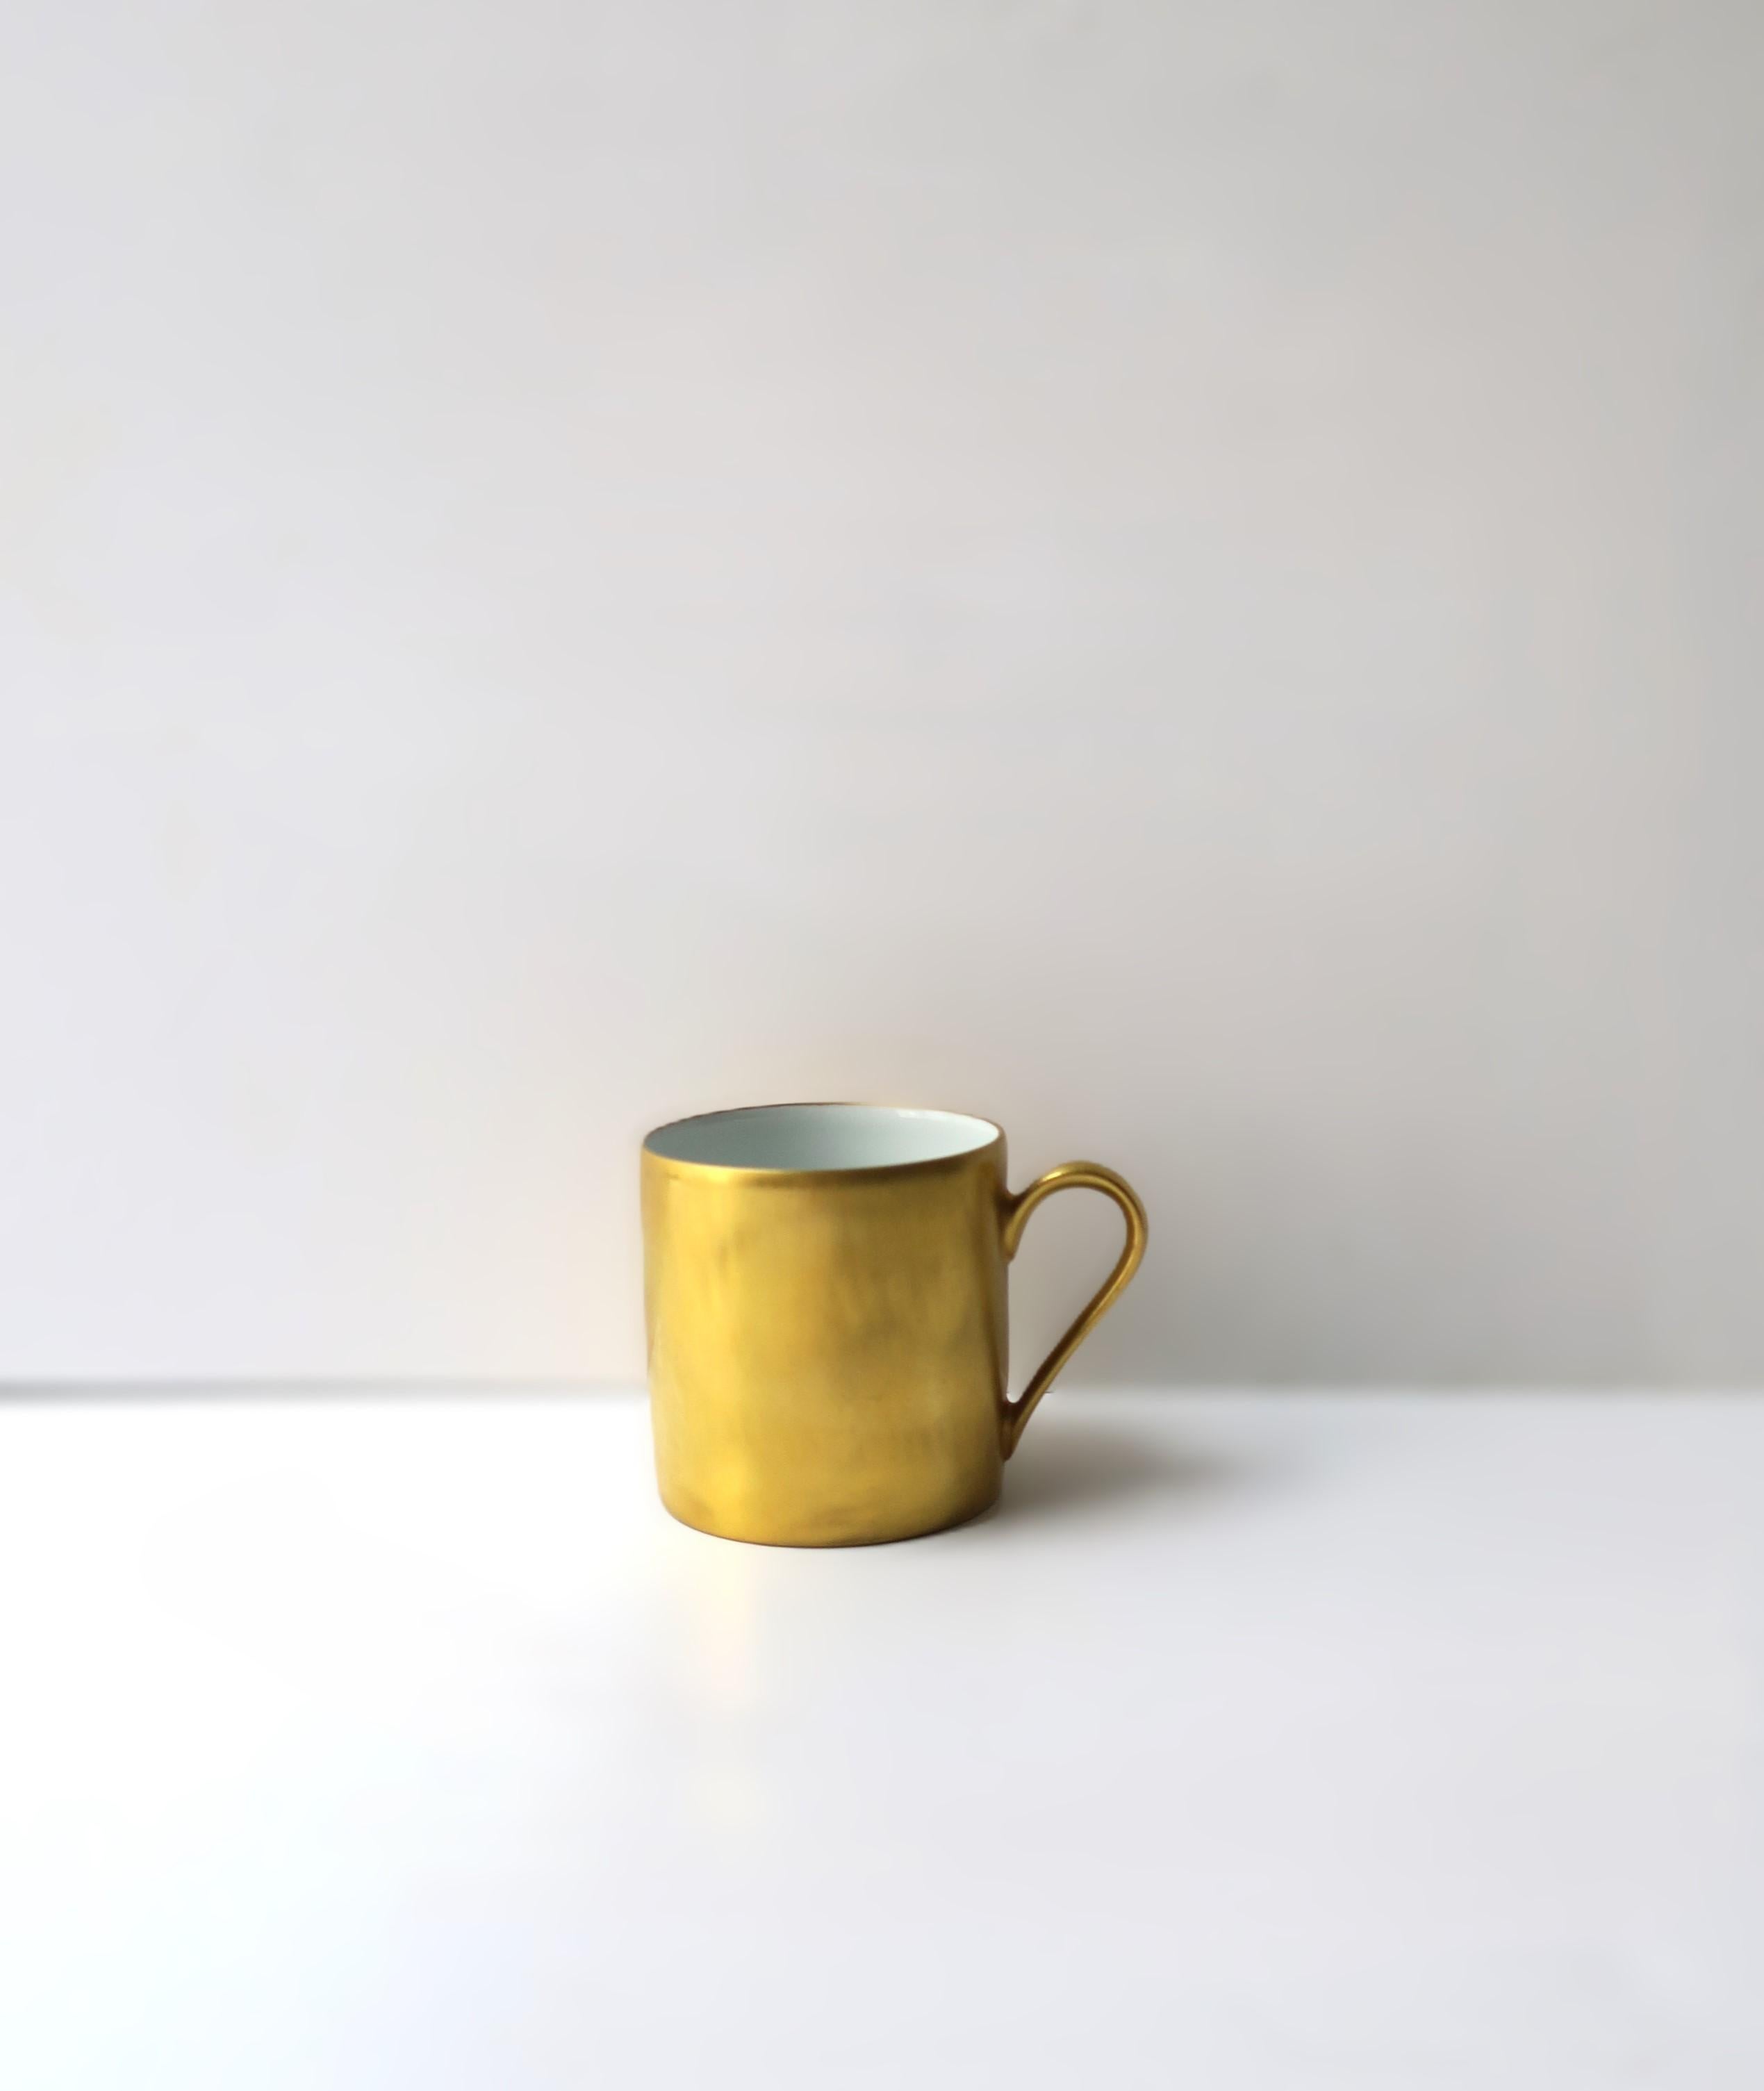 Eine sehr schöne französische Espresso- oder Teetasse aus Porzellan und Gold, ca. Anfang des 20. Jahrhunderts, Frankreich. Das Äußere der Tasse besteht aus echtem 24-karätigem Gold, das von Hand aufgetragen wurde. Genießen Sie jeden Tag einen